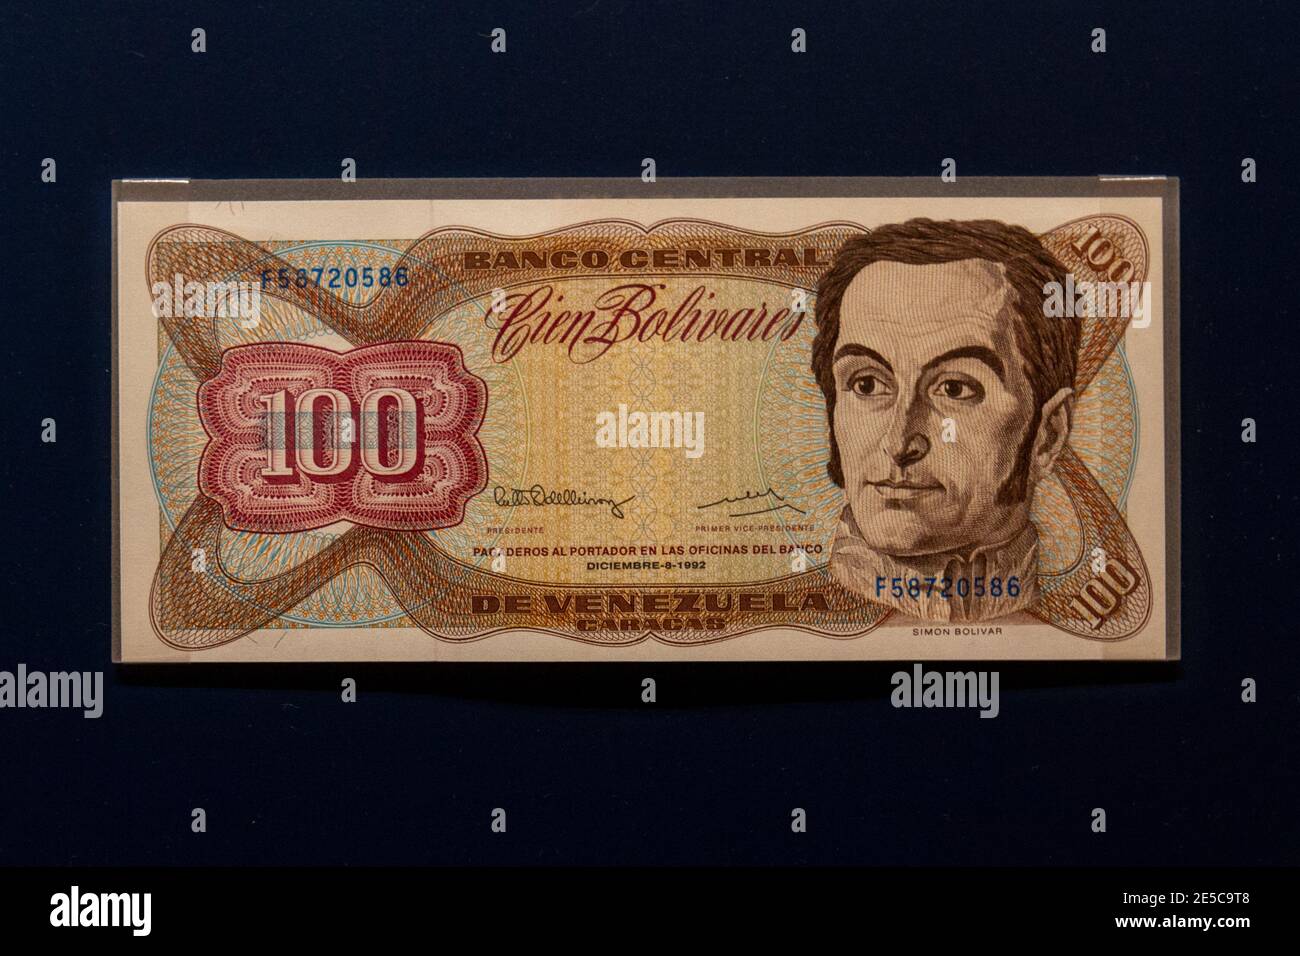 Banco central de venezuela fotografías e imágenes de alta resolución - Alamy